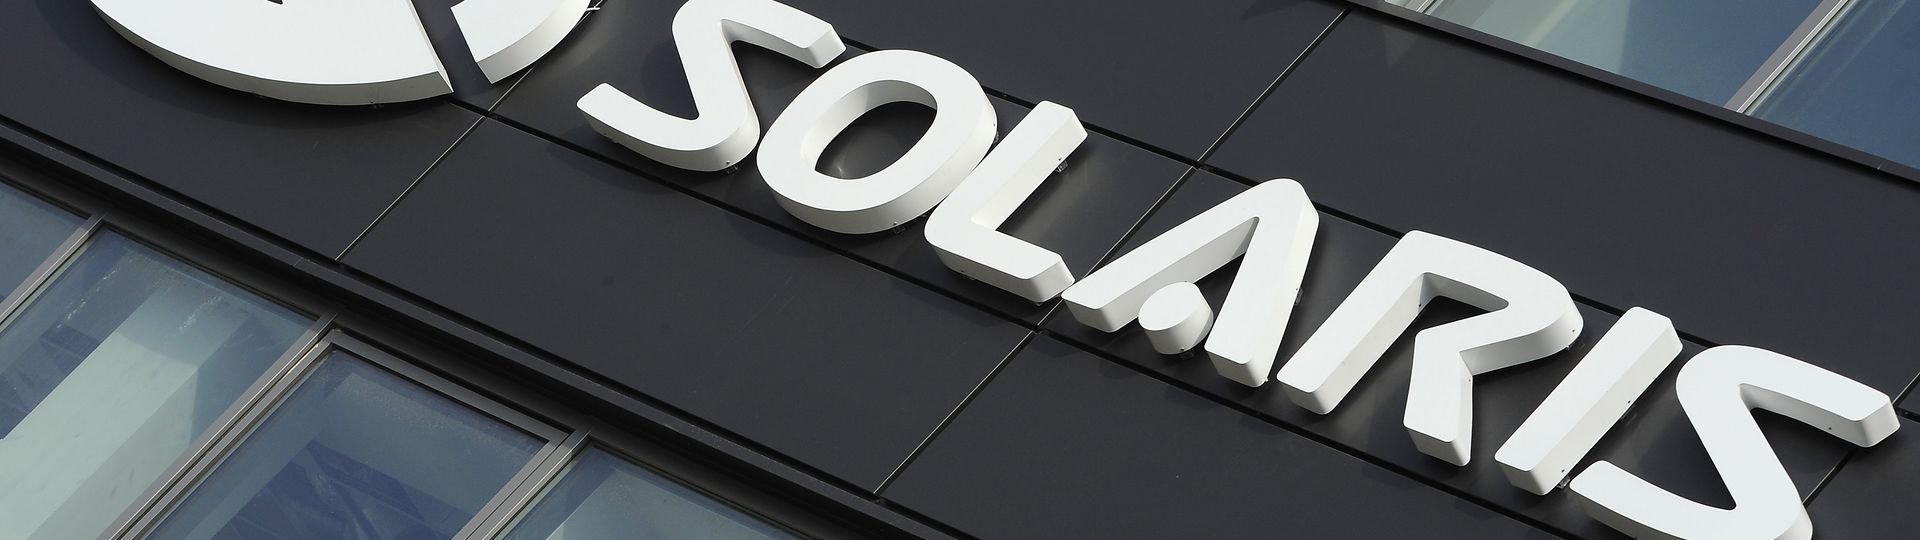 Solaris an der Spitze des europäischen E-Mobilitätsmarktes.  Firma blickt auf 2018 zurück